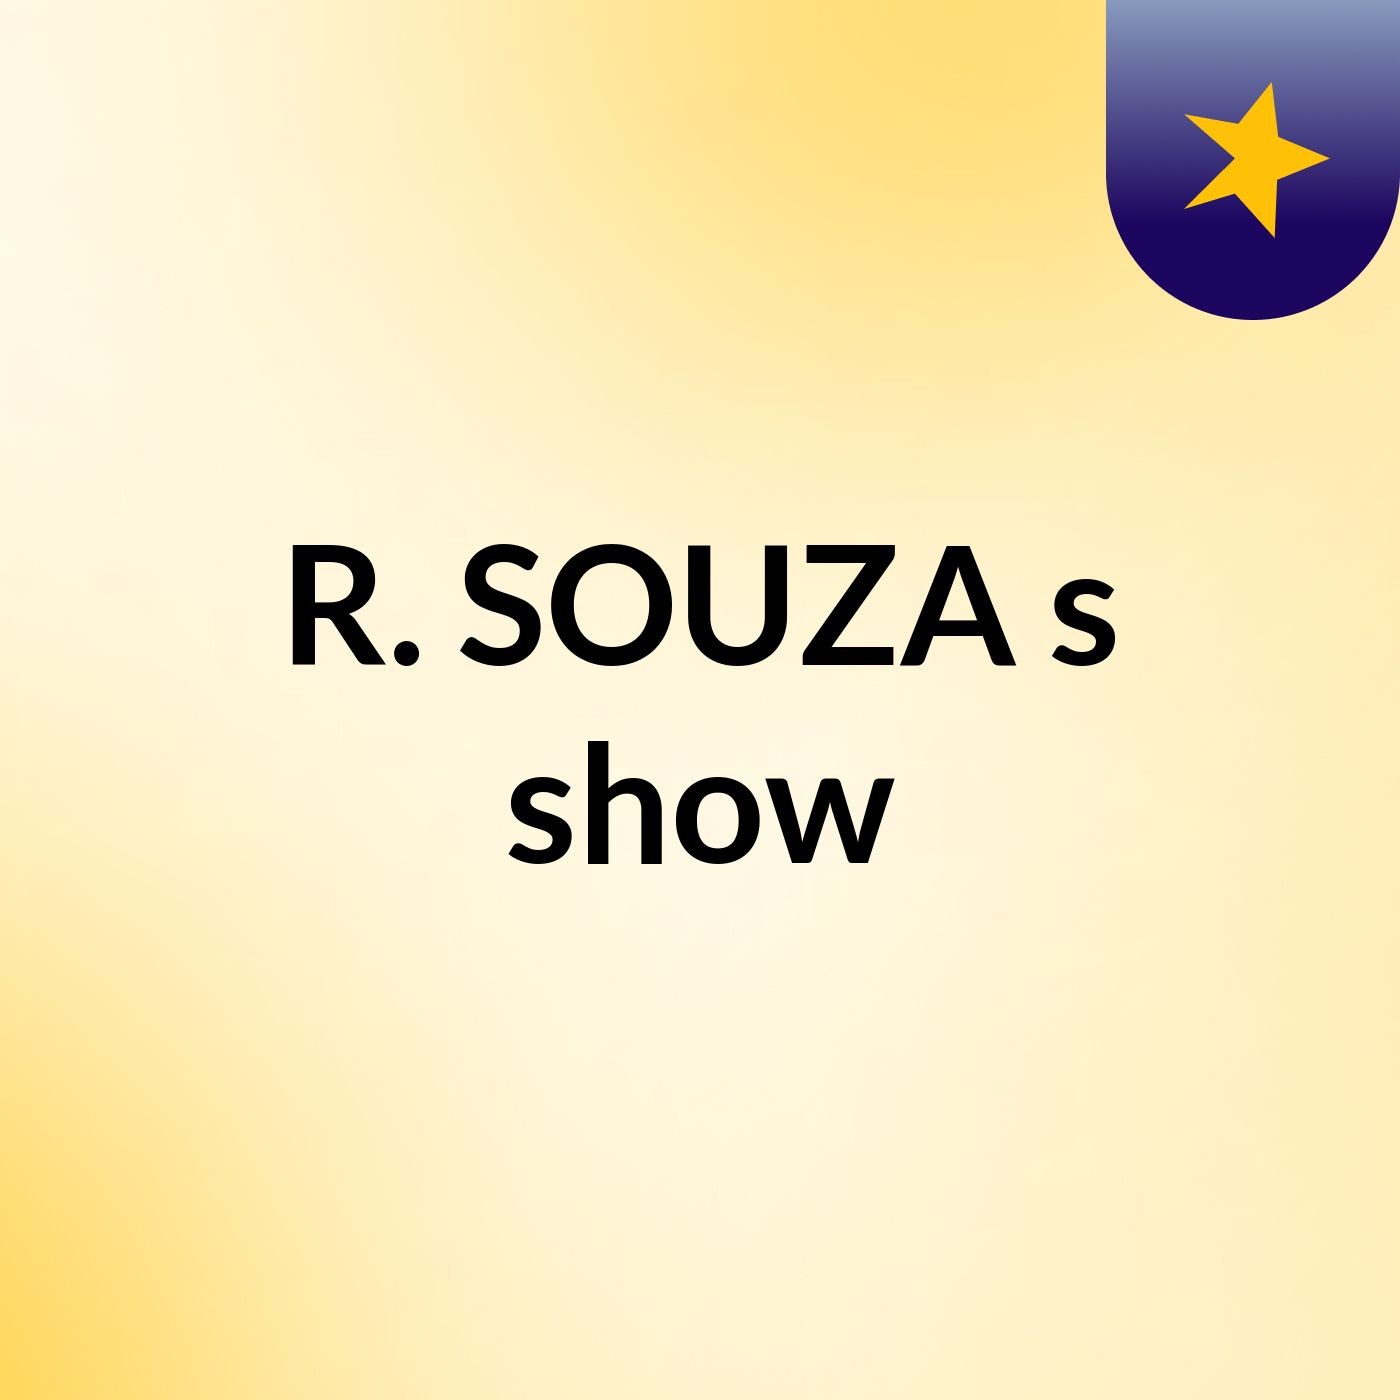 R. SOUZA's show